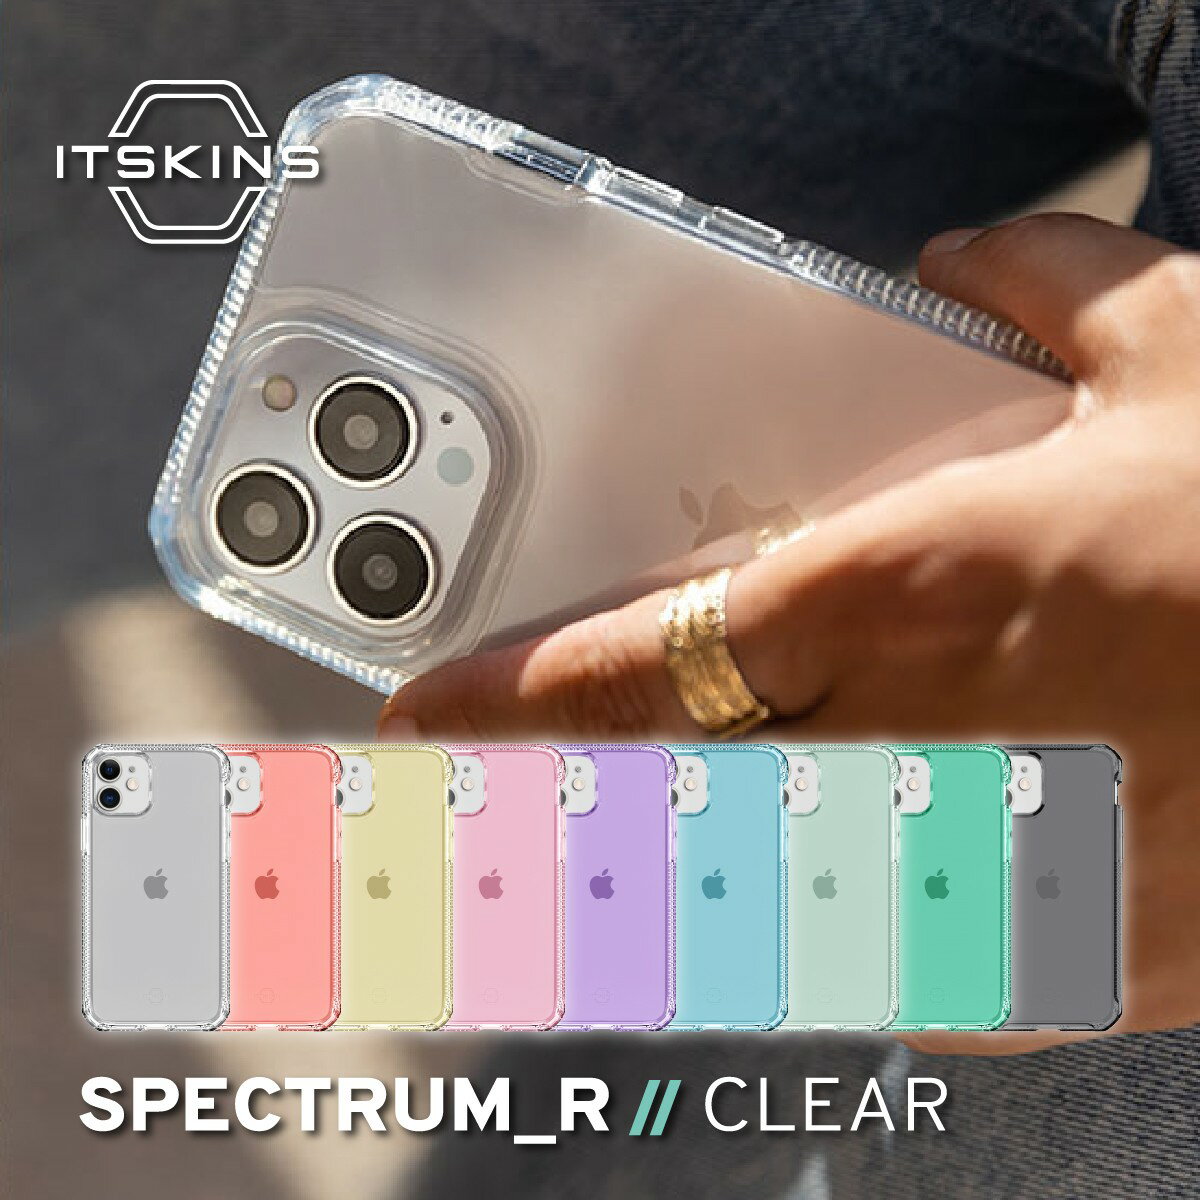 iPhone11 / iPhoneXR ケース 耐衝撃 ソフト TPU クリア カバー 抗菌 リサイクル 素材 使用 スマホケース 黄ばみにくい 透明 携帯ケース  ITSKINS SPECTRUM R // CLEAR